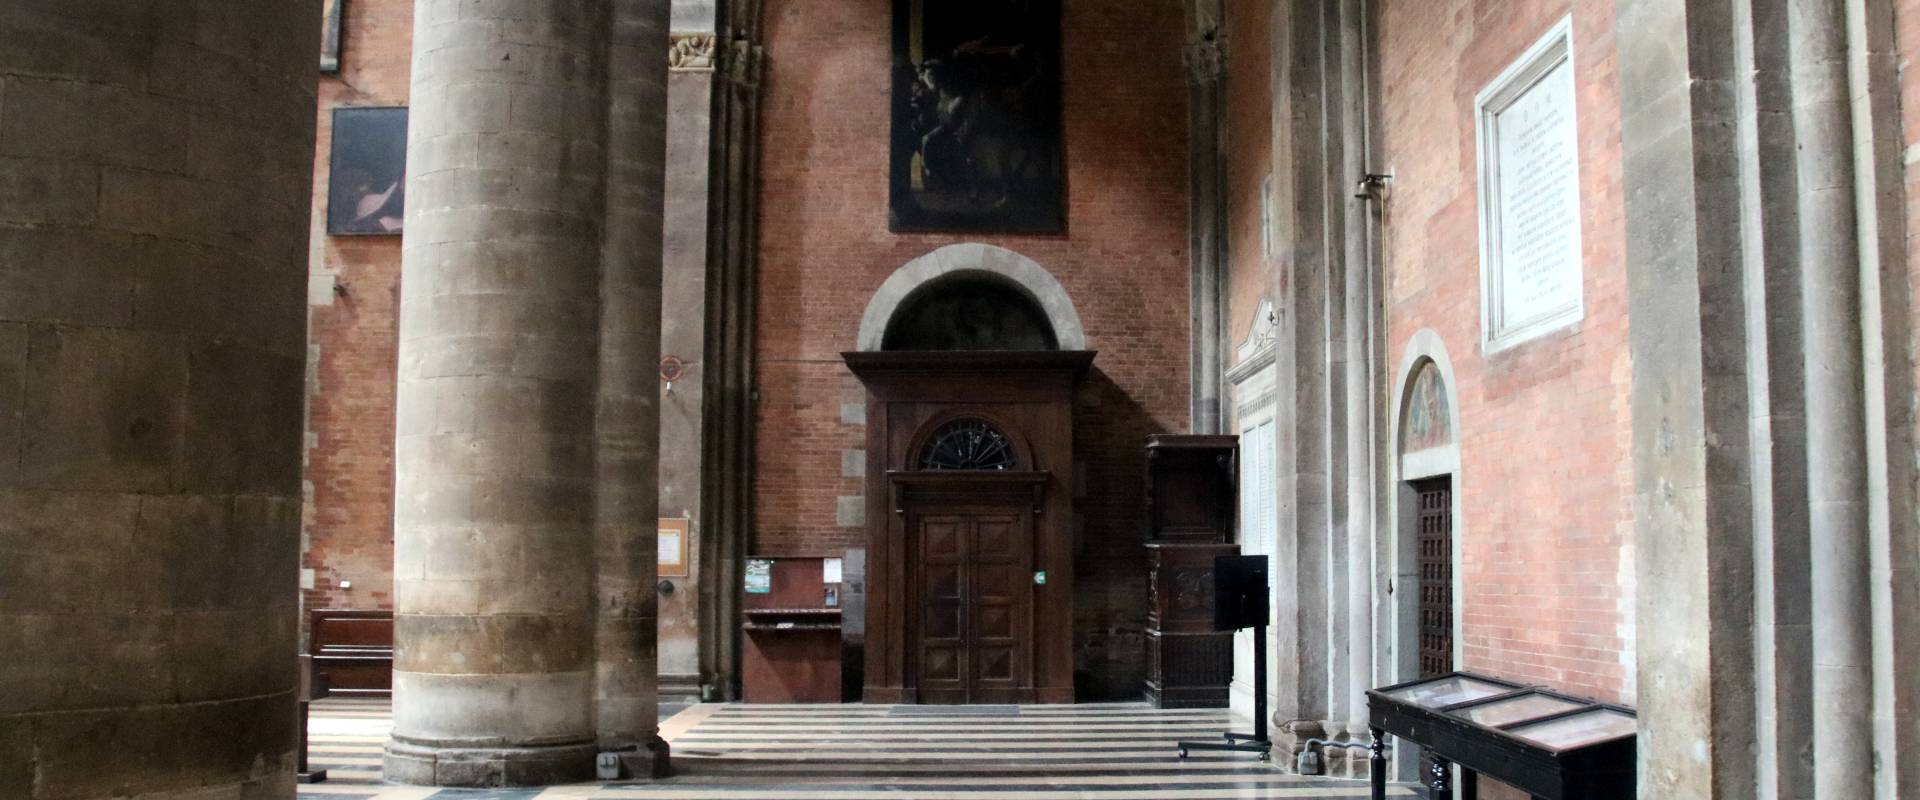 Duomo di Piacenza, interno 04 foto di Mongolo1984